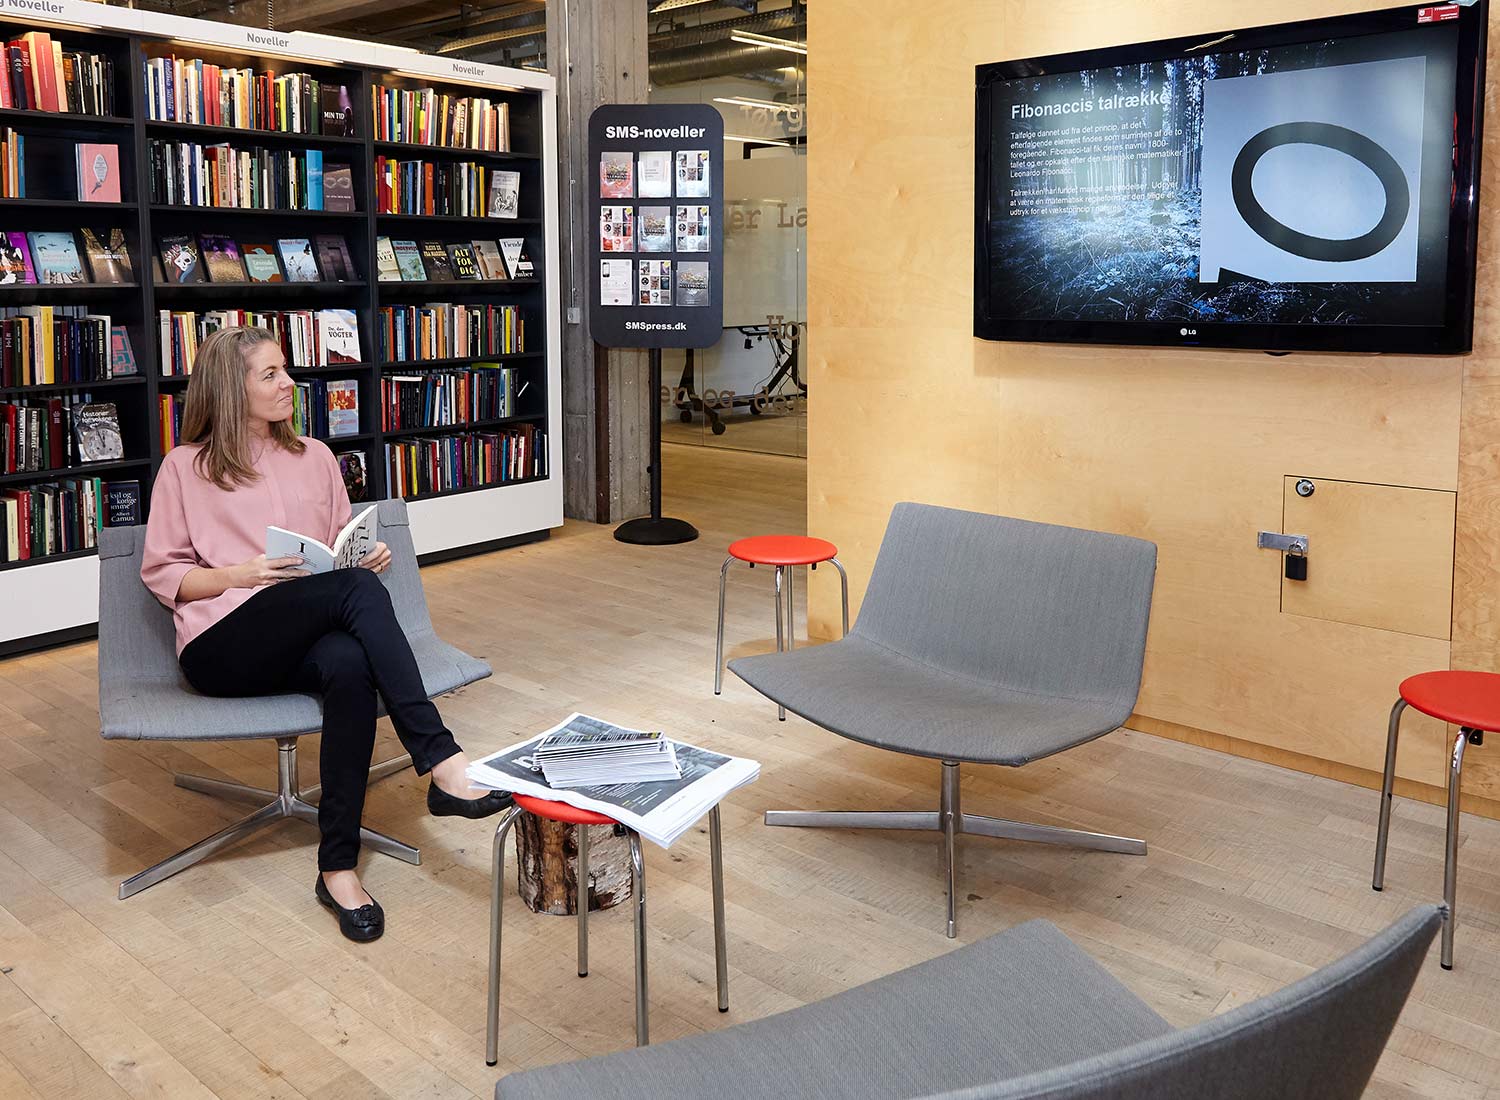 Femme regardant un affichage numérique interactif dans une bibliothèque